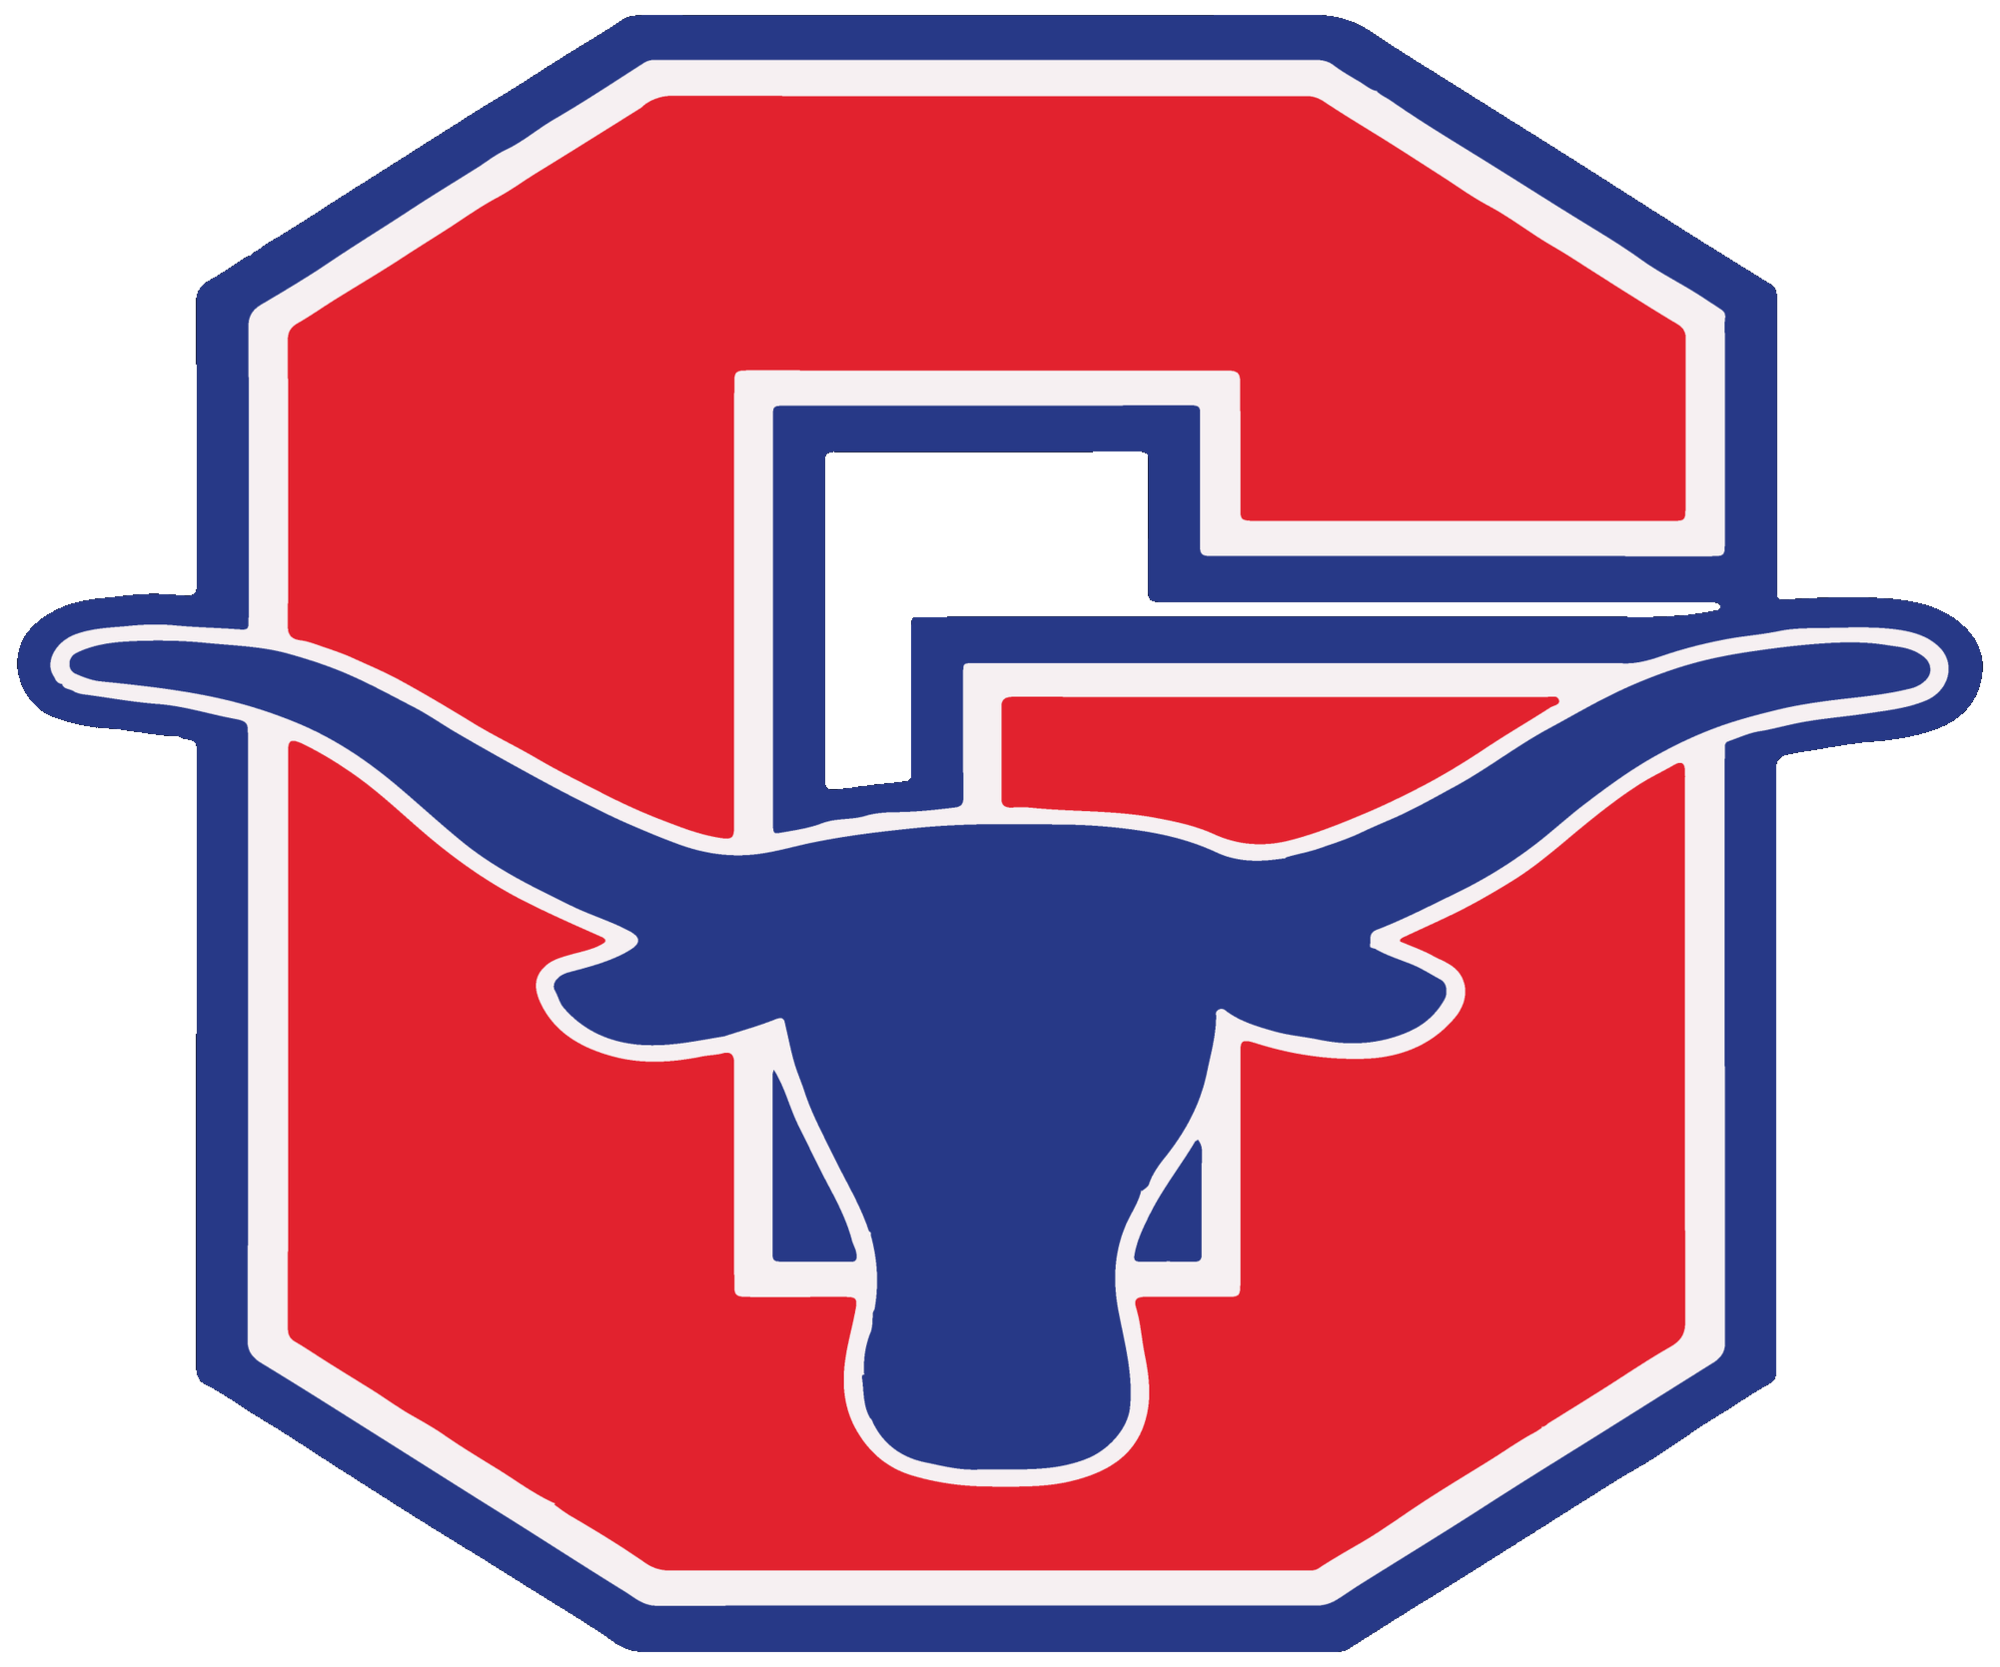 Steers Logo - The Graham Steers